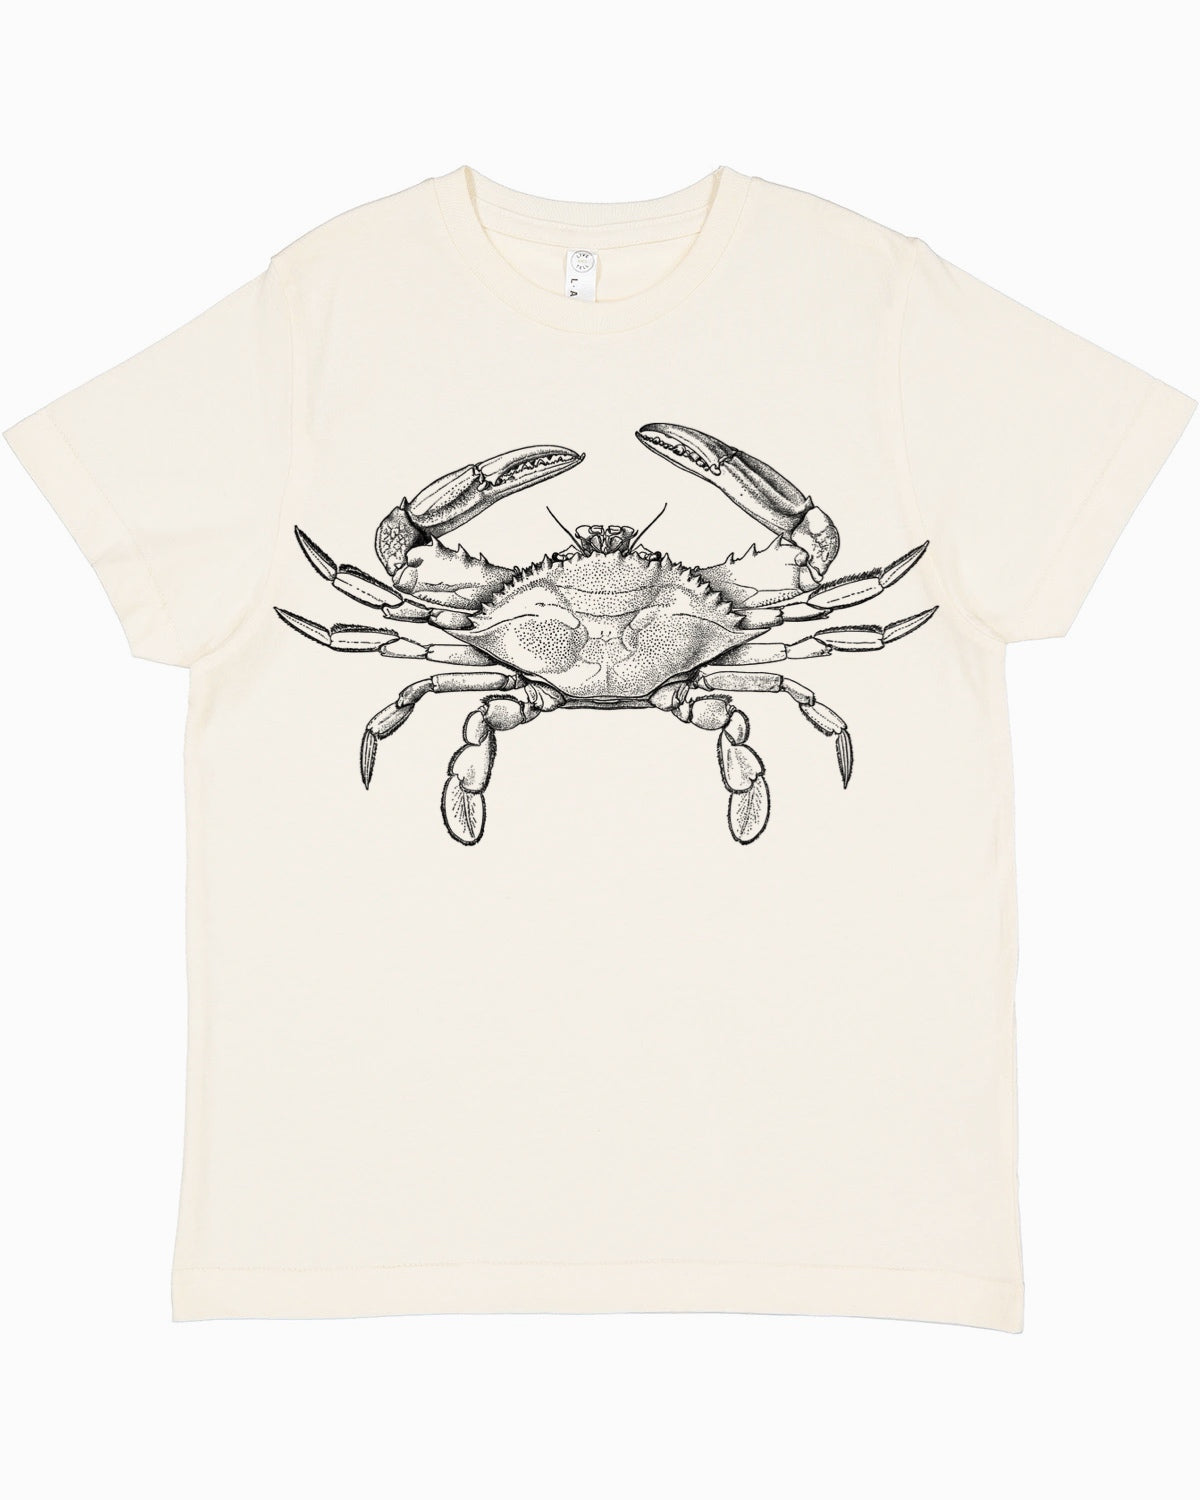 Crab Tee